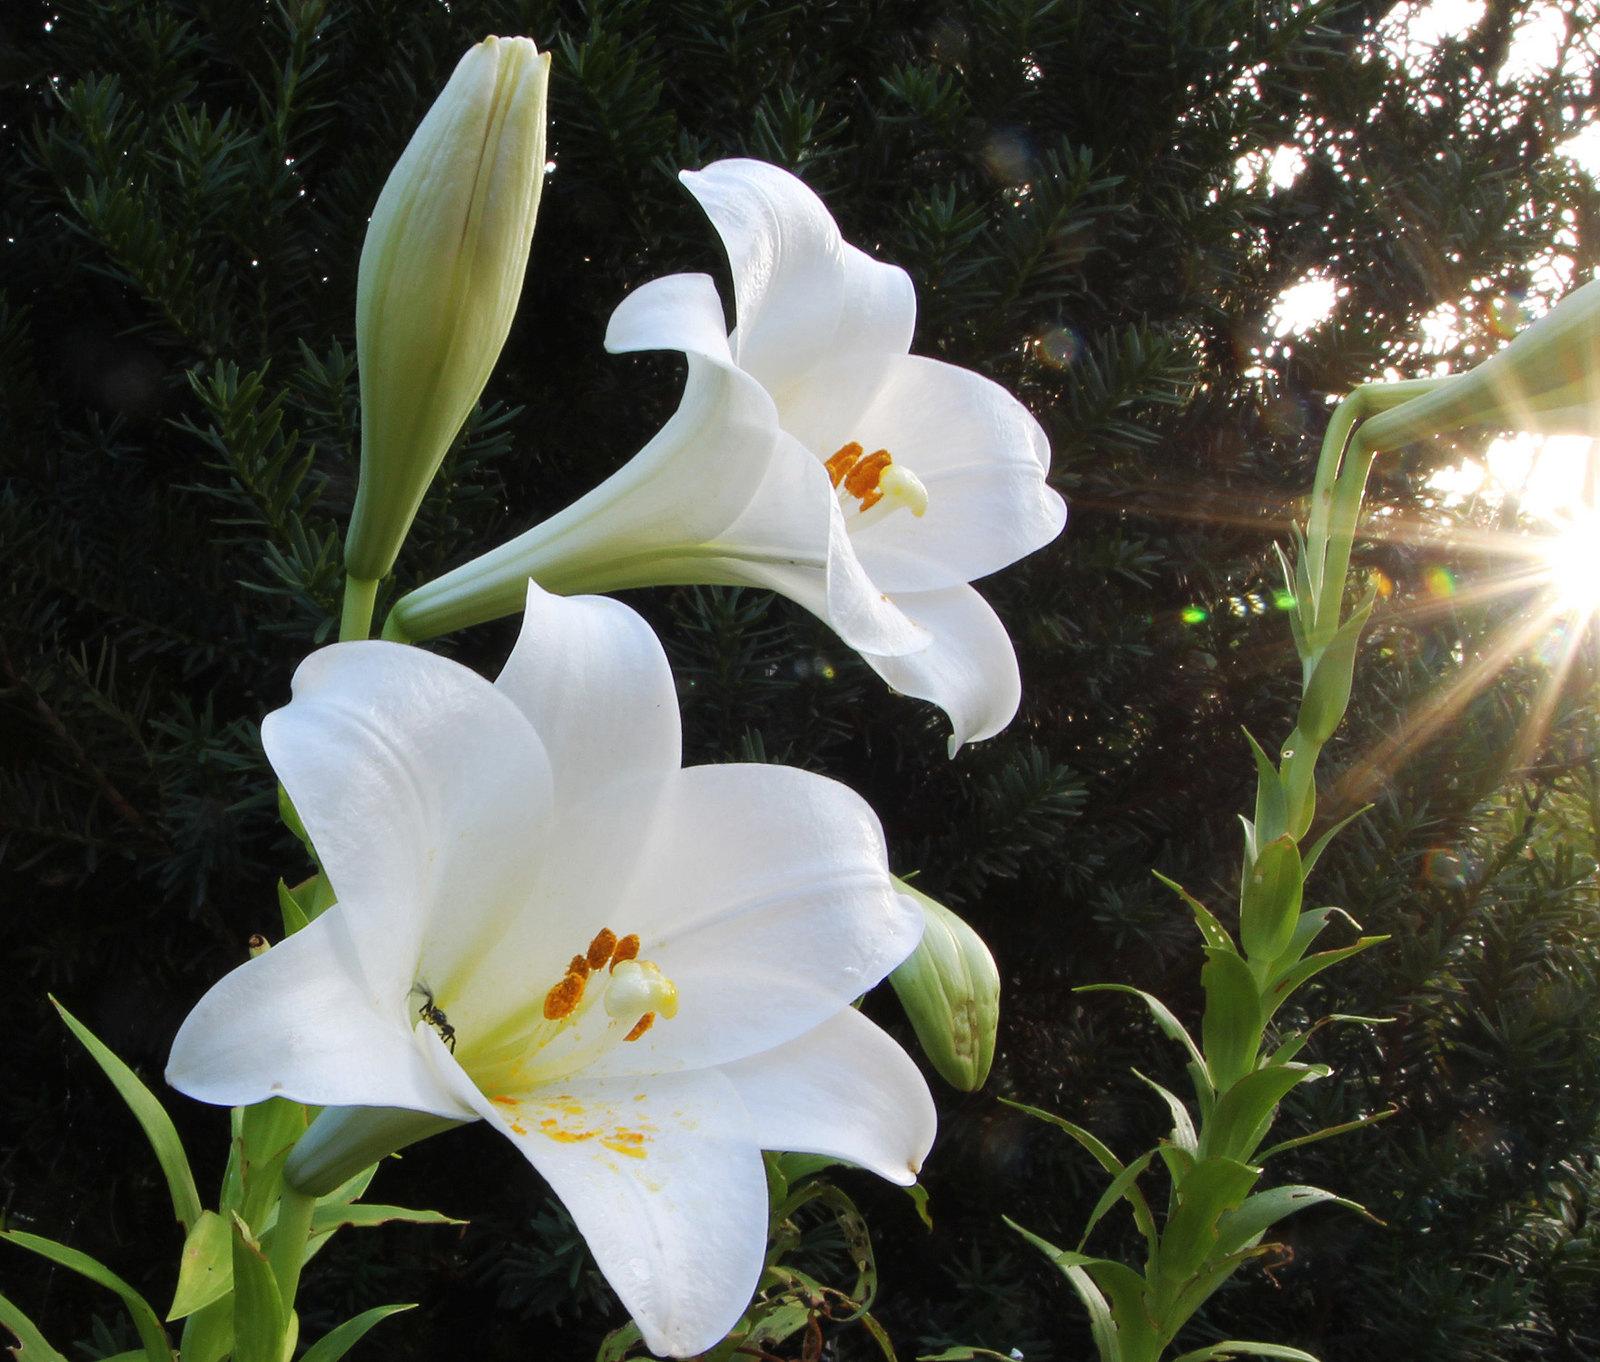 Hoa loa kèn có ý nghĩa gì? Cách trồng và chăm sóc giúp hoa nở đẹp